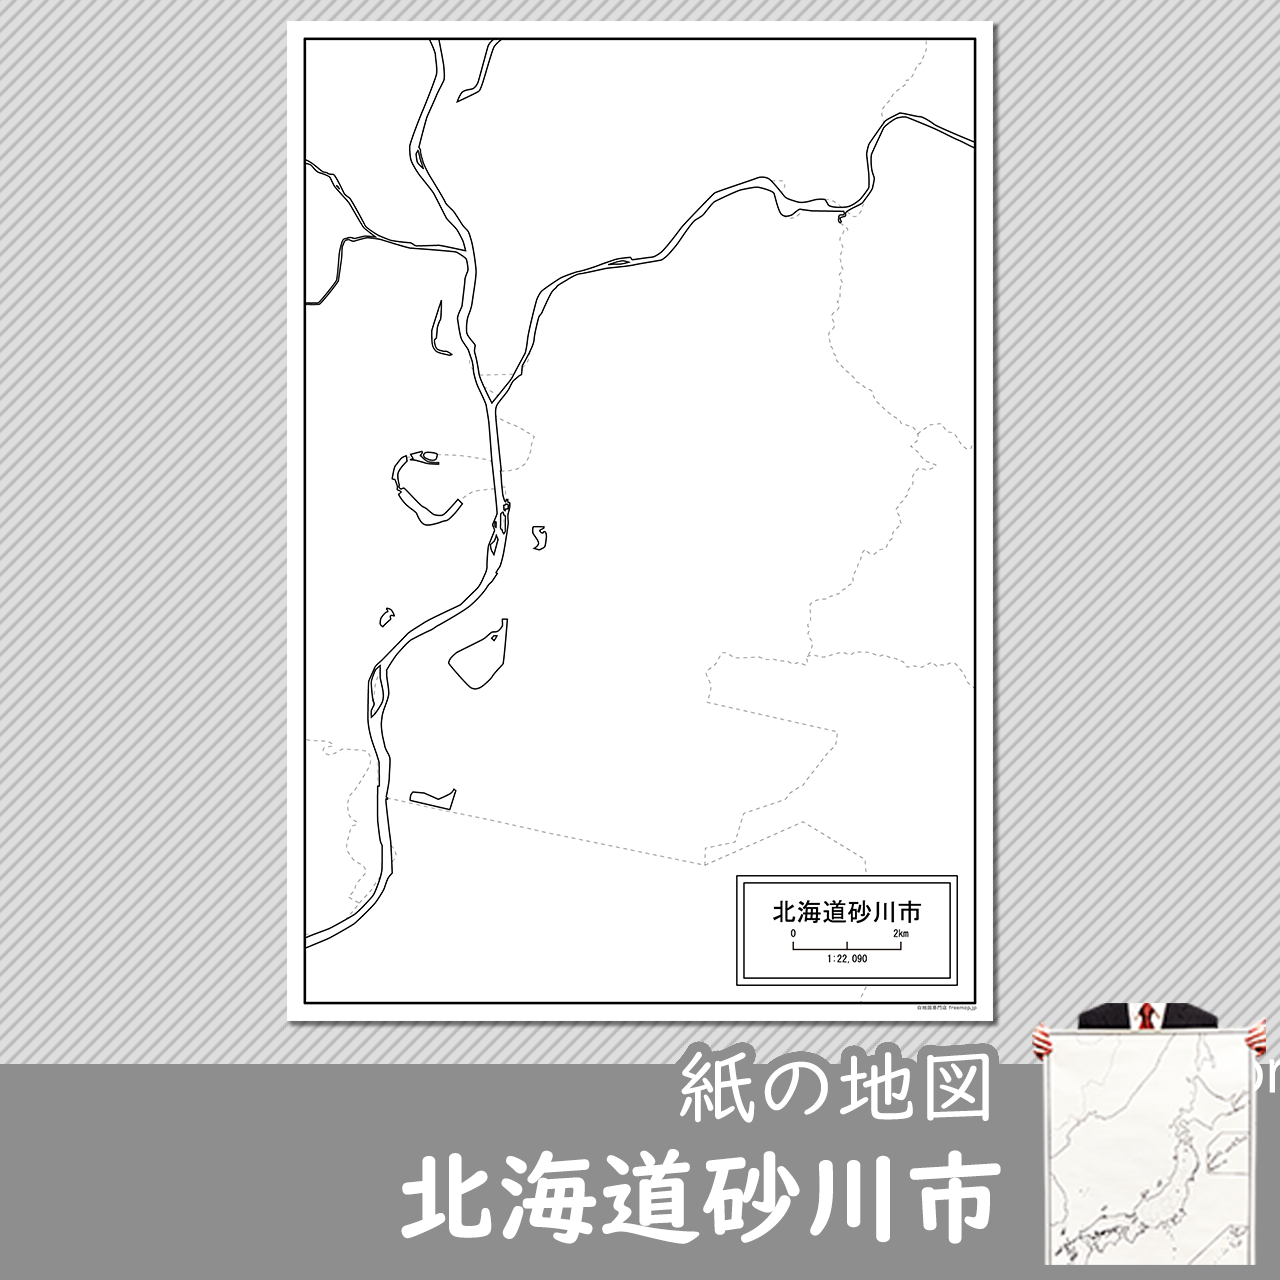 砂川市の紙の白地図のサムネイル